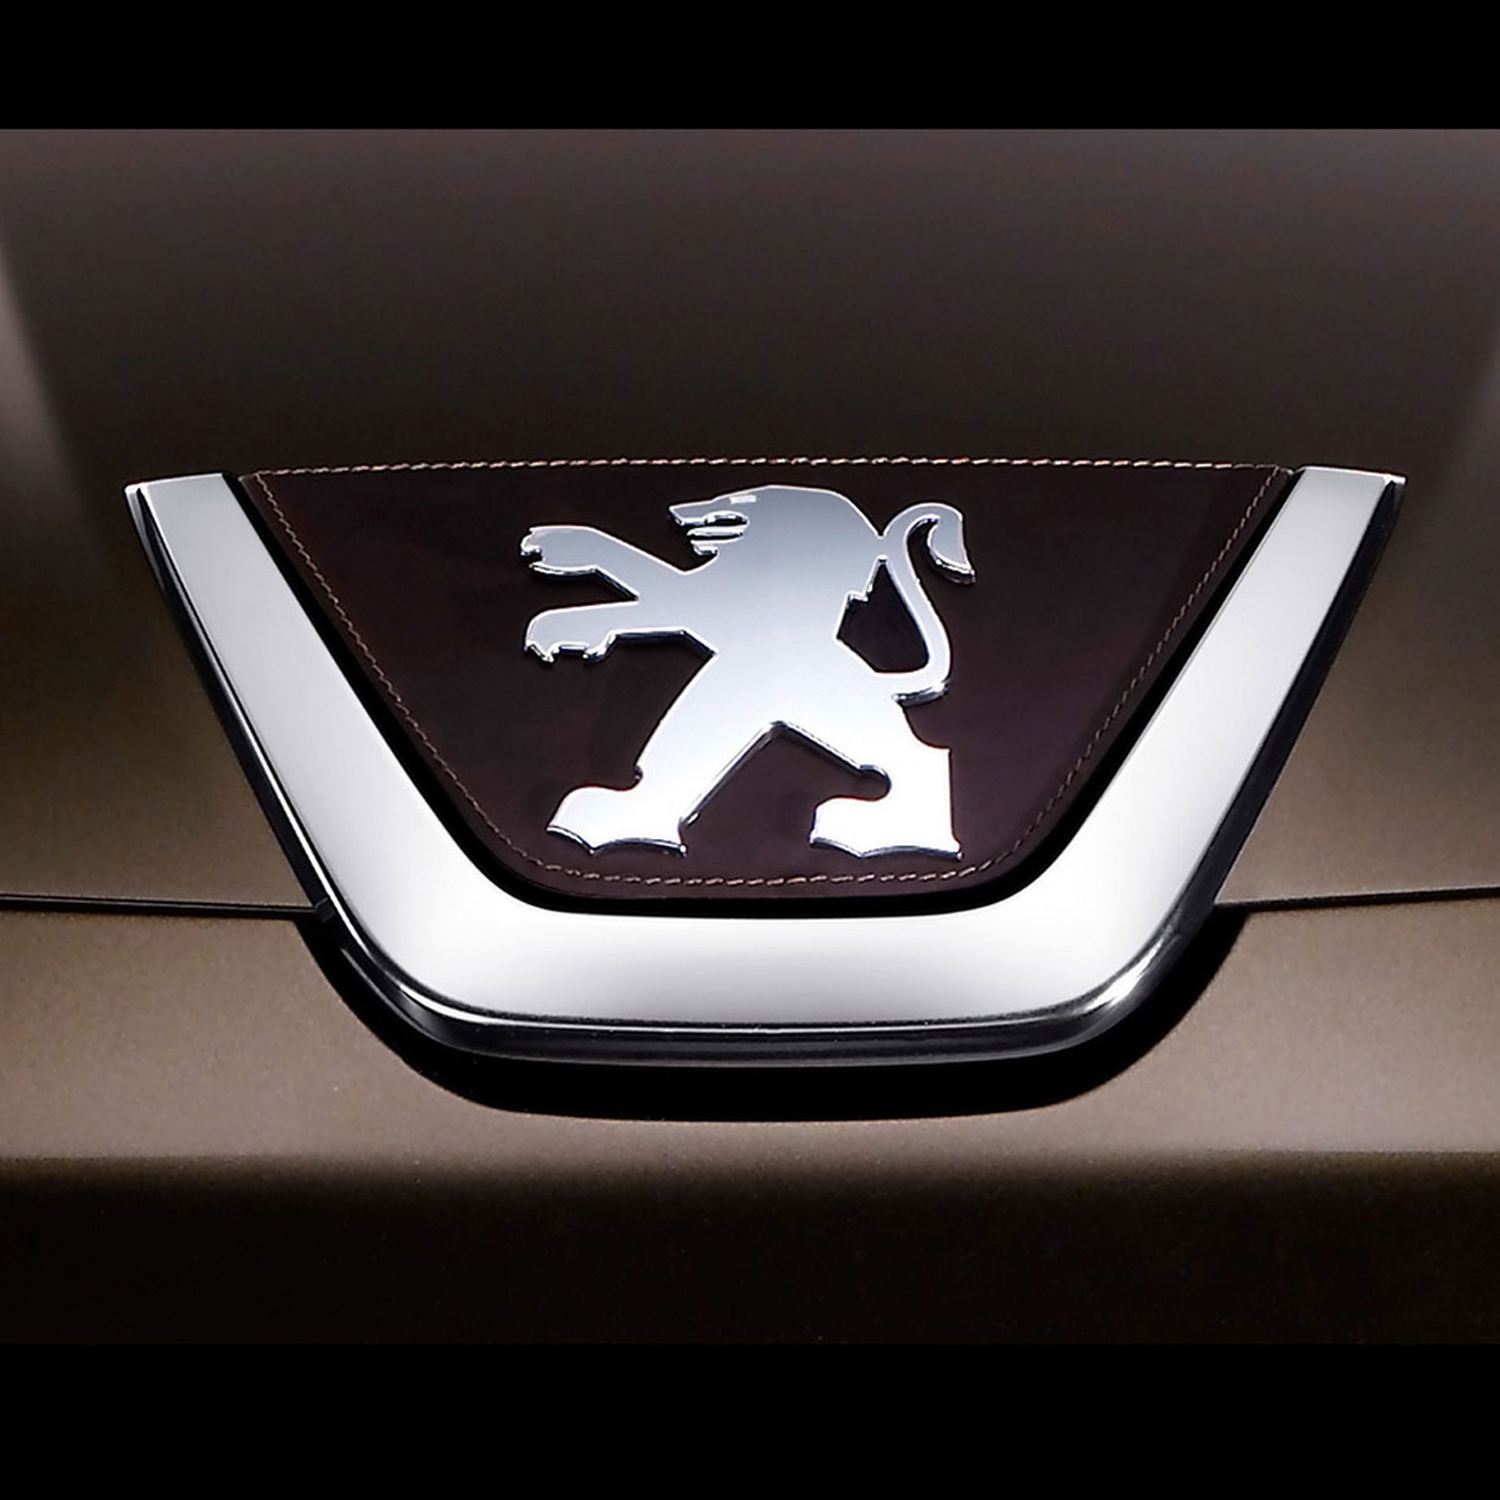 Peugeot logo car emblem